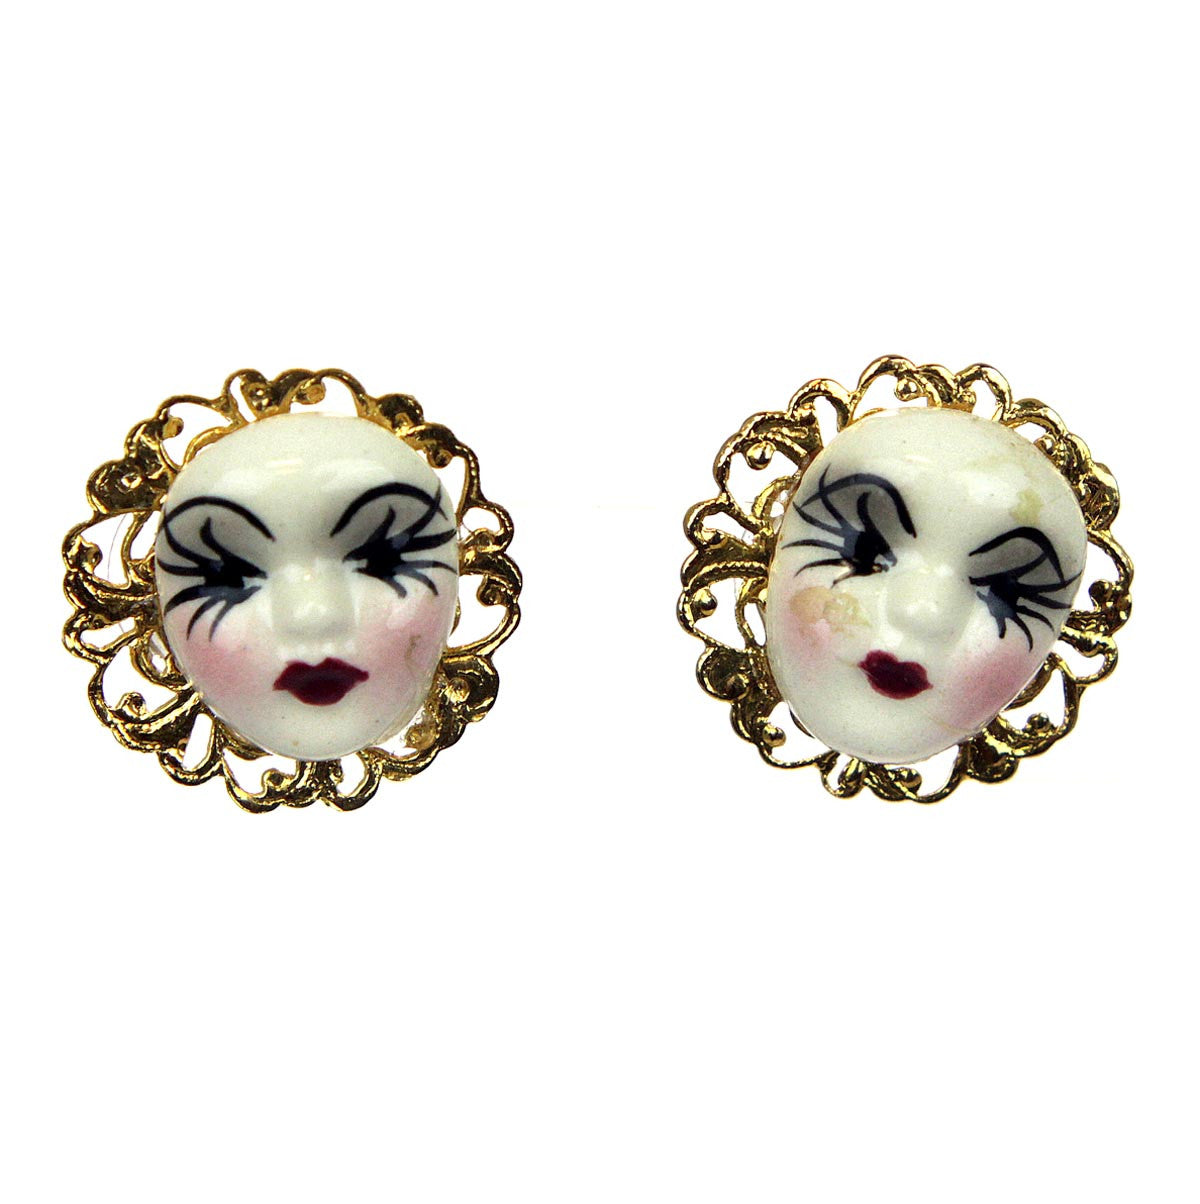 Pierrot Face Earrings